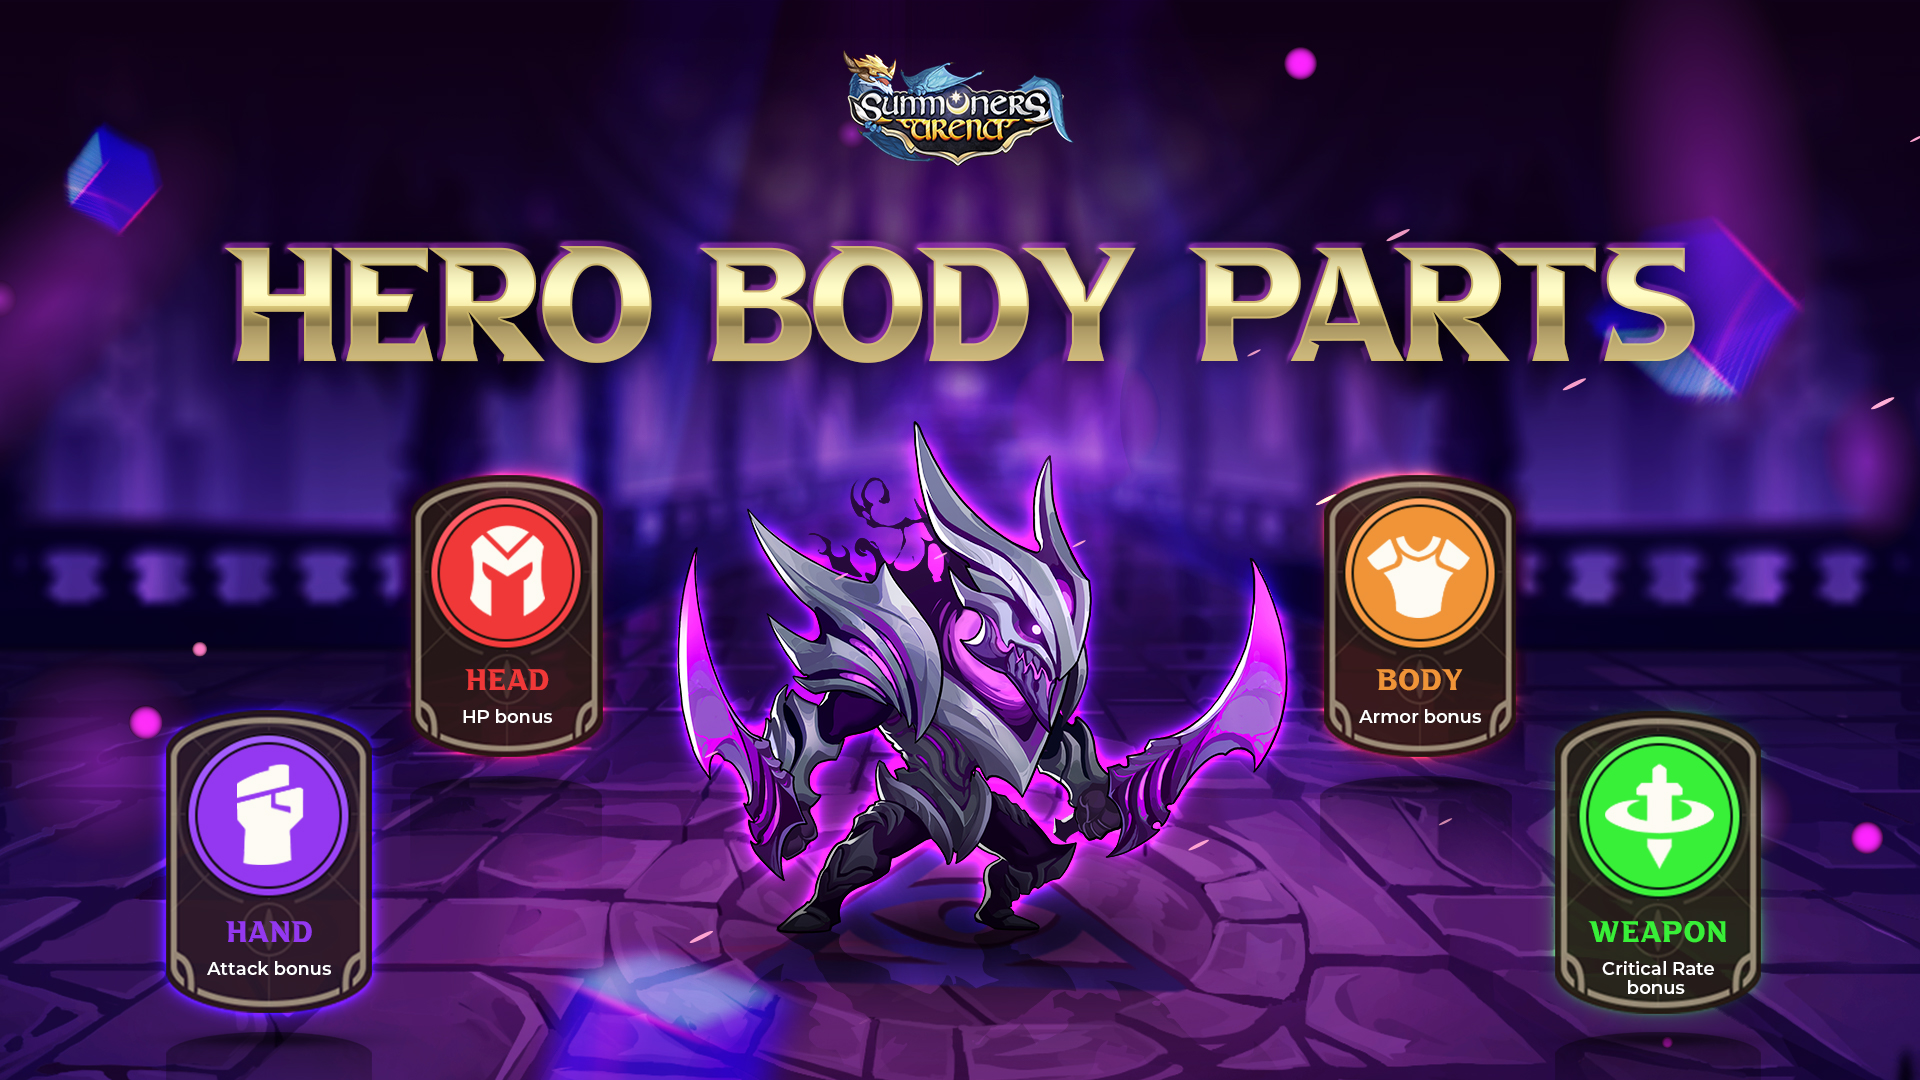 body part heroes summoners arena